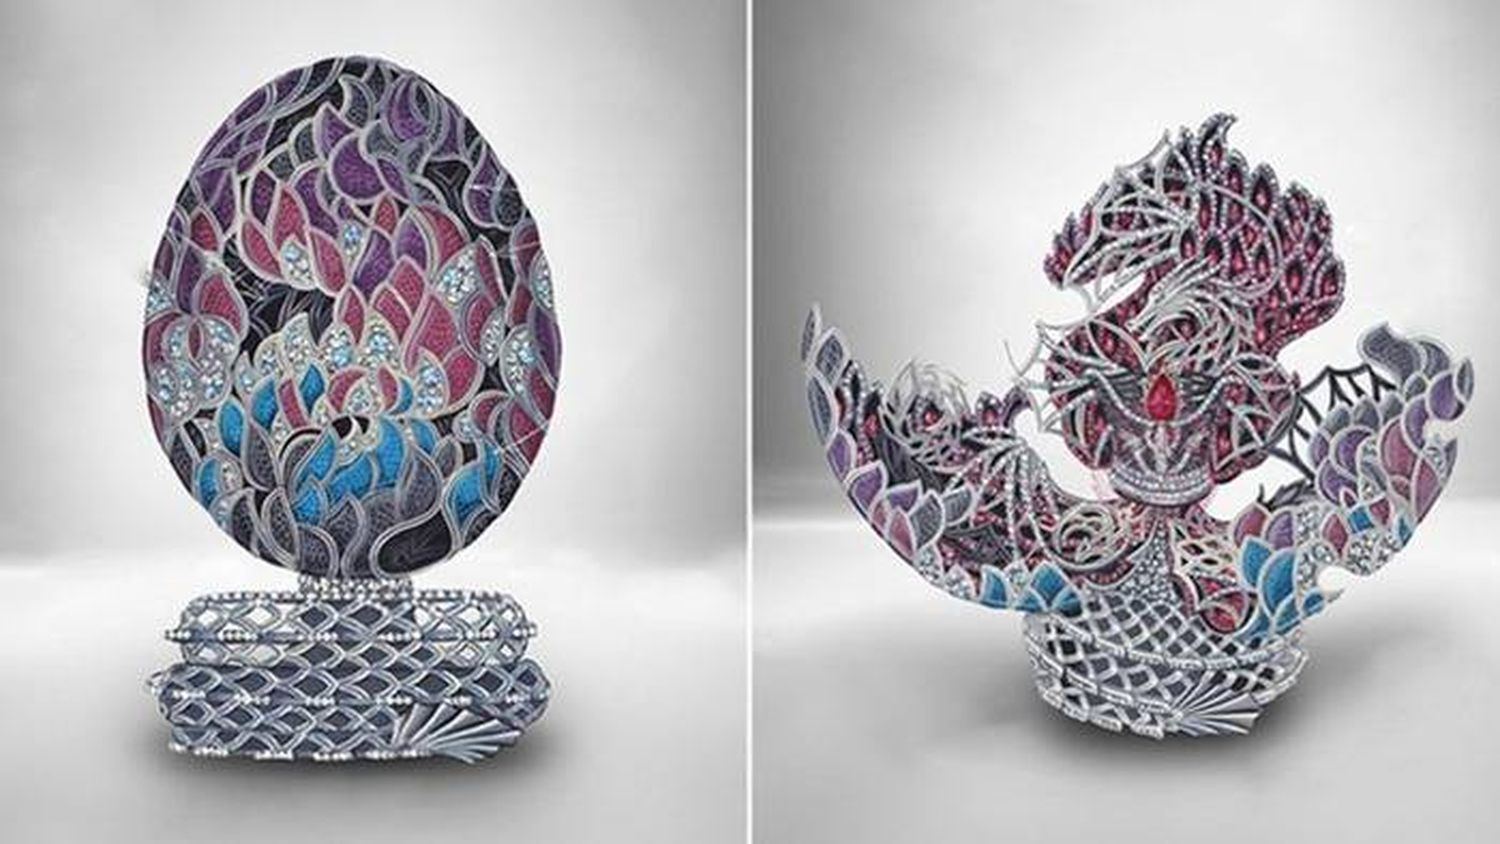 Diseñaron un huevo imperial Fabergé de 2.200.000 dólares en honor a �SJuego de tronos⬝